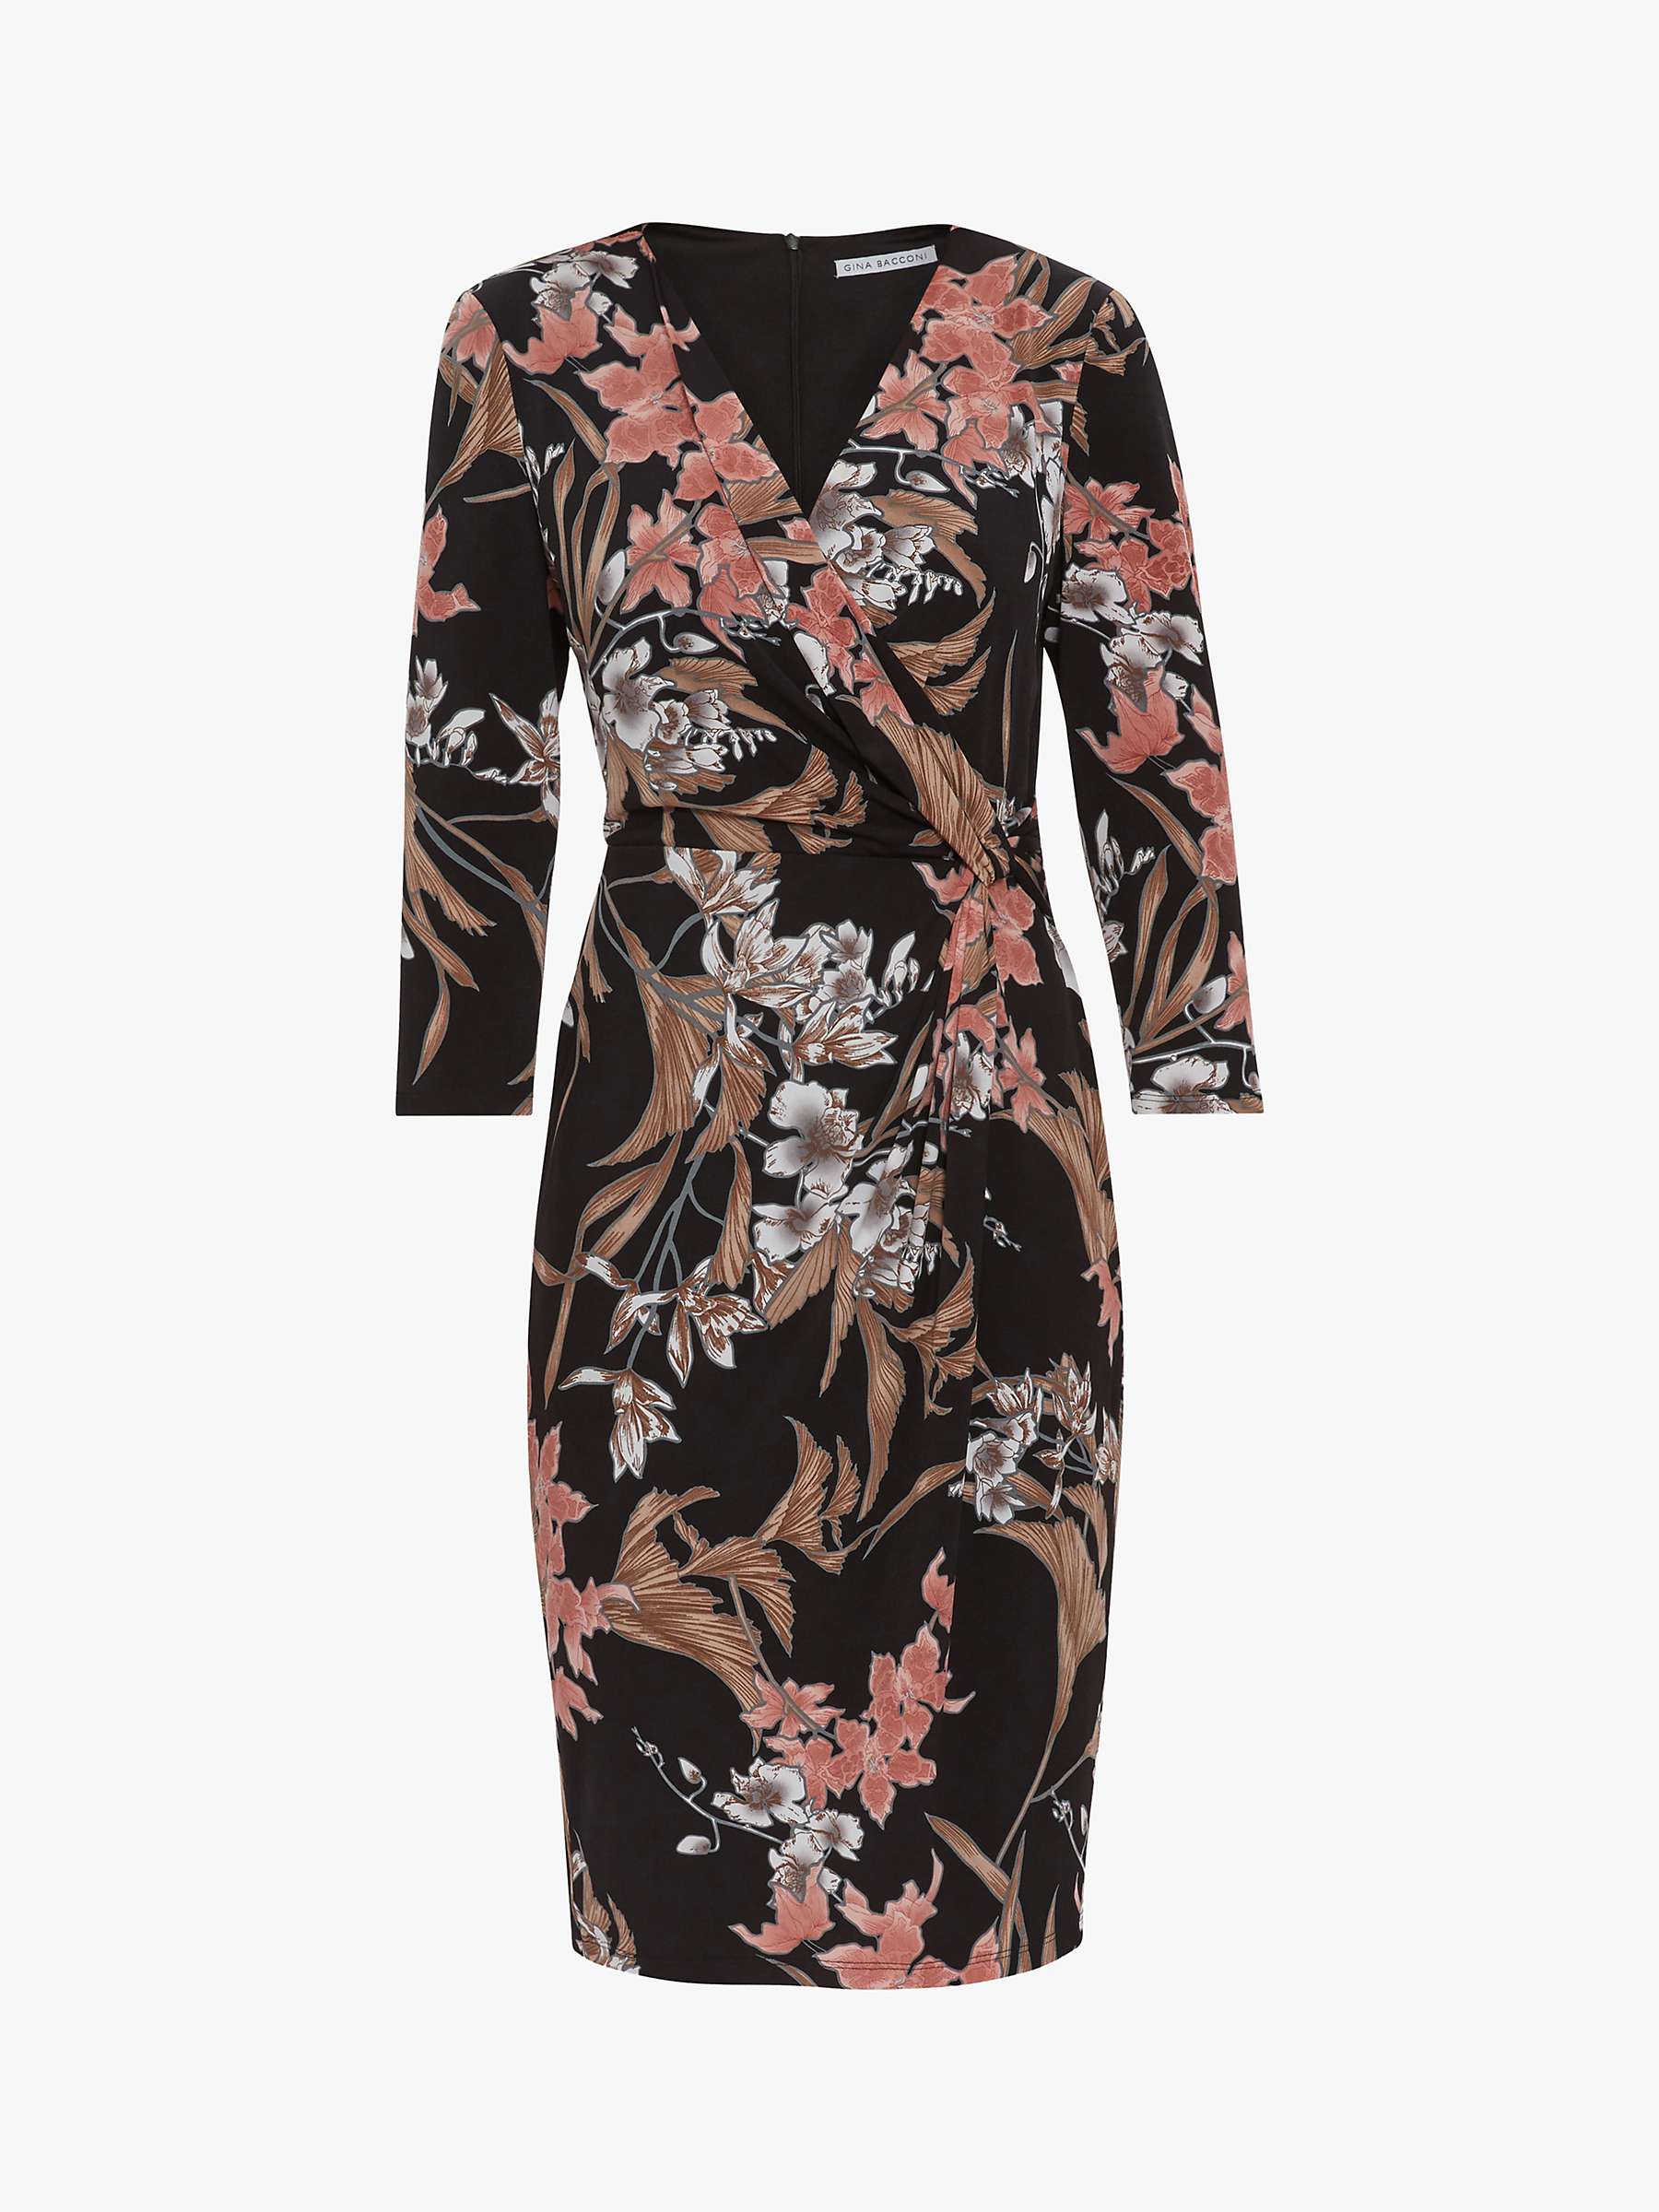 Buy Gina Bacconi Tassiana Floral Dress, Black/Beige Online at johnlewis.com